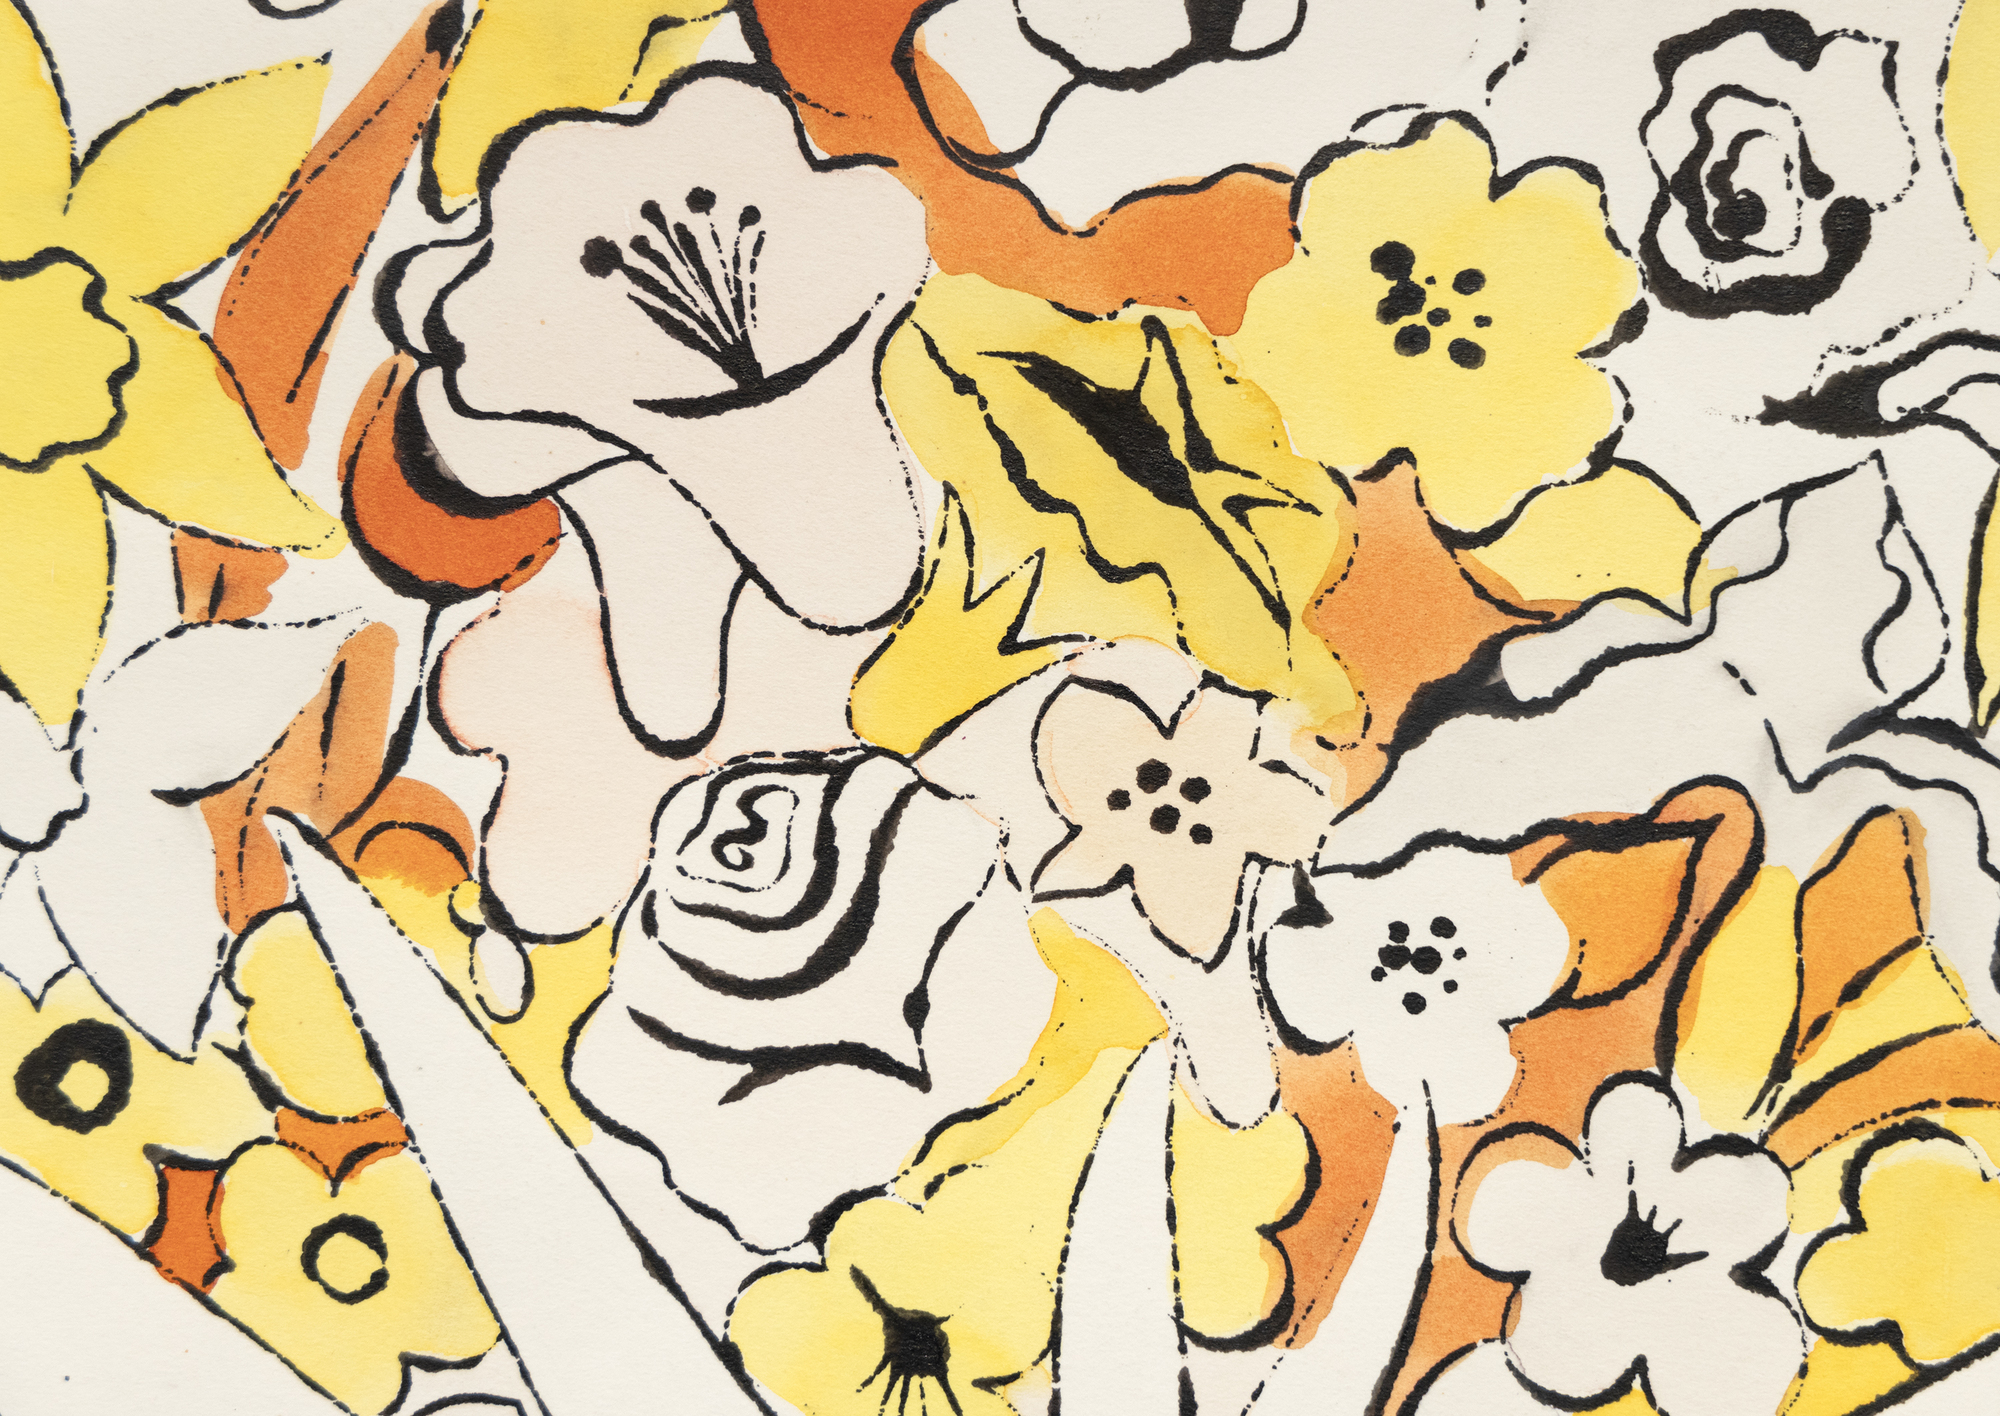 沃霍尔的水墨画和染色画常常被忽视，他善于用简练的线条将主题和元素还原为本质，每幅作品都充满了奇妙的趣味性。这些作品经常提醒我们，如果艺术不复杂、自由，就能最有效地传播幽默和奇思妙想。无题，花朵》是沃霍尔 1960 年著名的《Vogue》版面设计的先驱，将荧光色的花朵图画结合在一起。这幅画预示了沃霍尔早期将线条与色彩分离的倾向，这一手法后来赋予了他的丝网版画抽象的直接性。